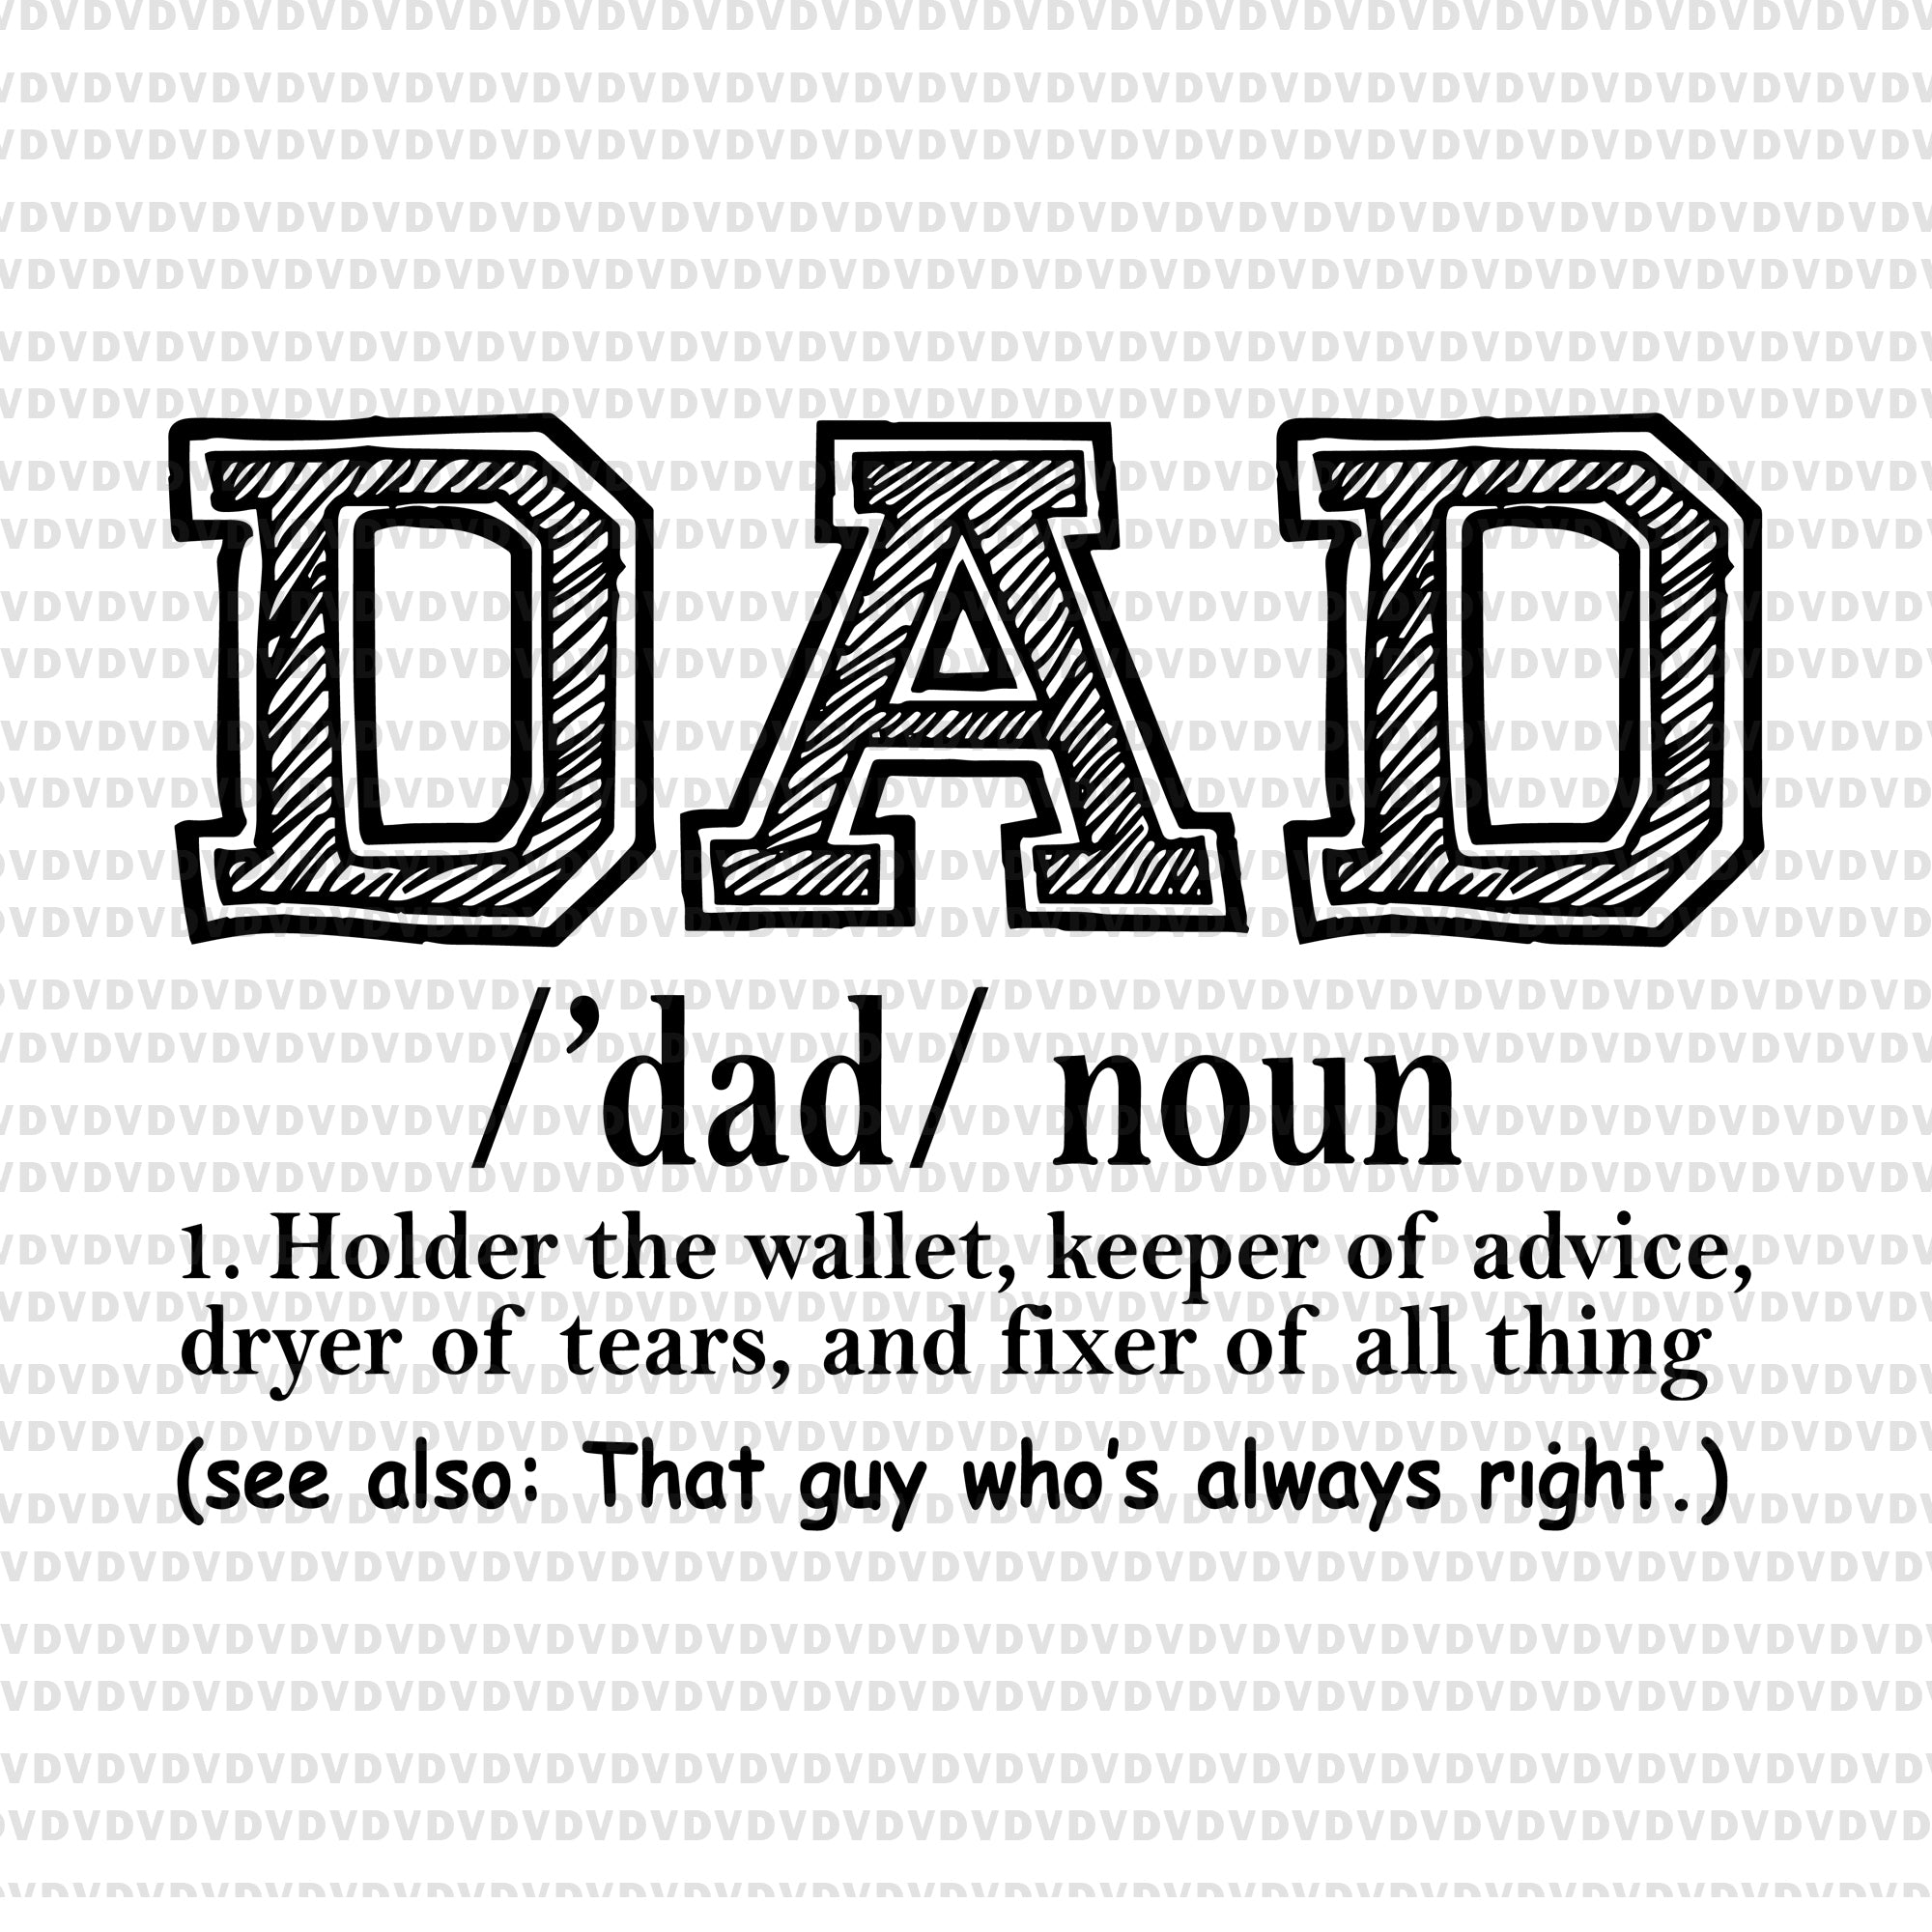 Download Dad Noun Svg Dad Noun Png Father S Day Svg Father Day Png Father D Buydesigntshirt